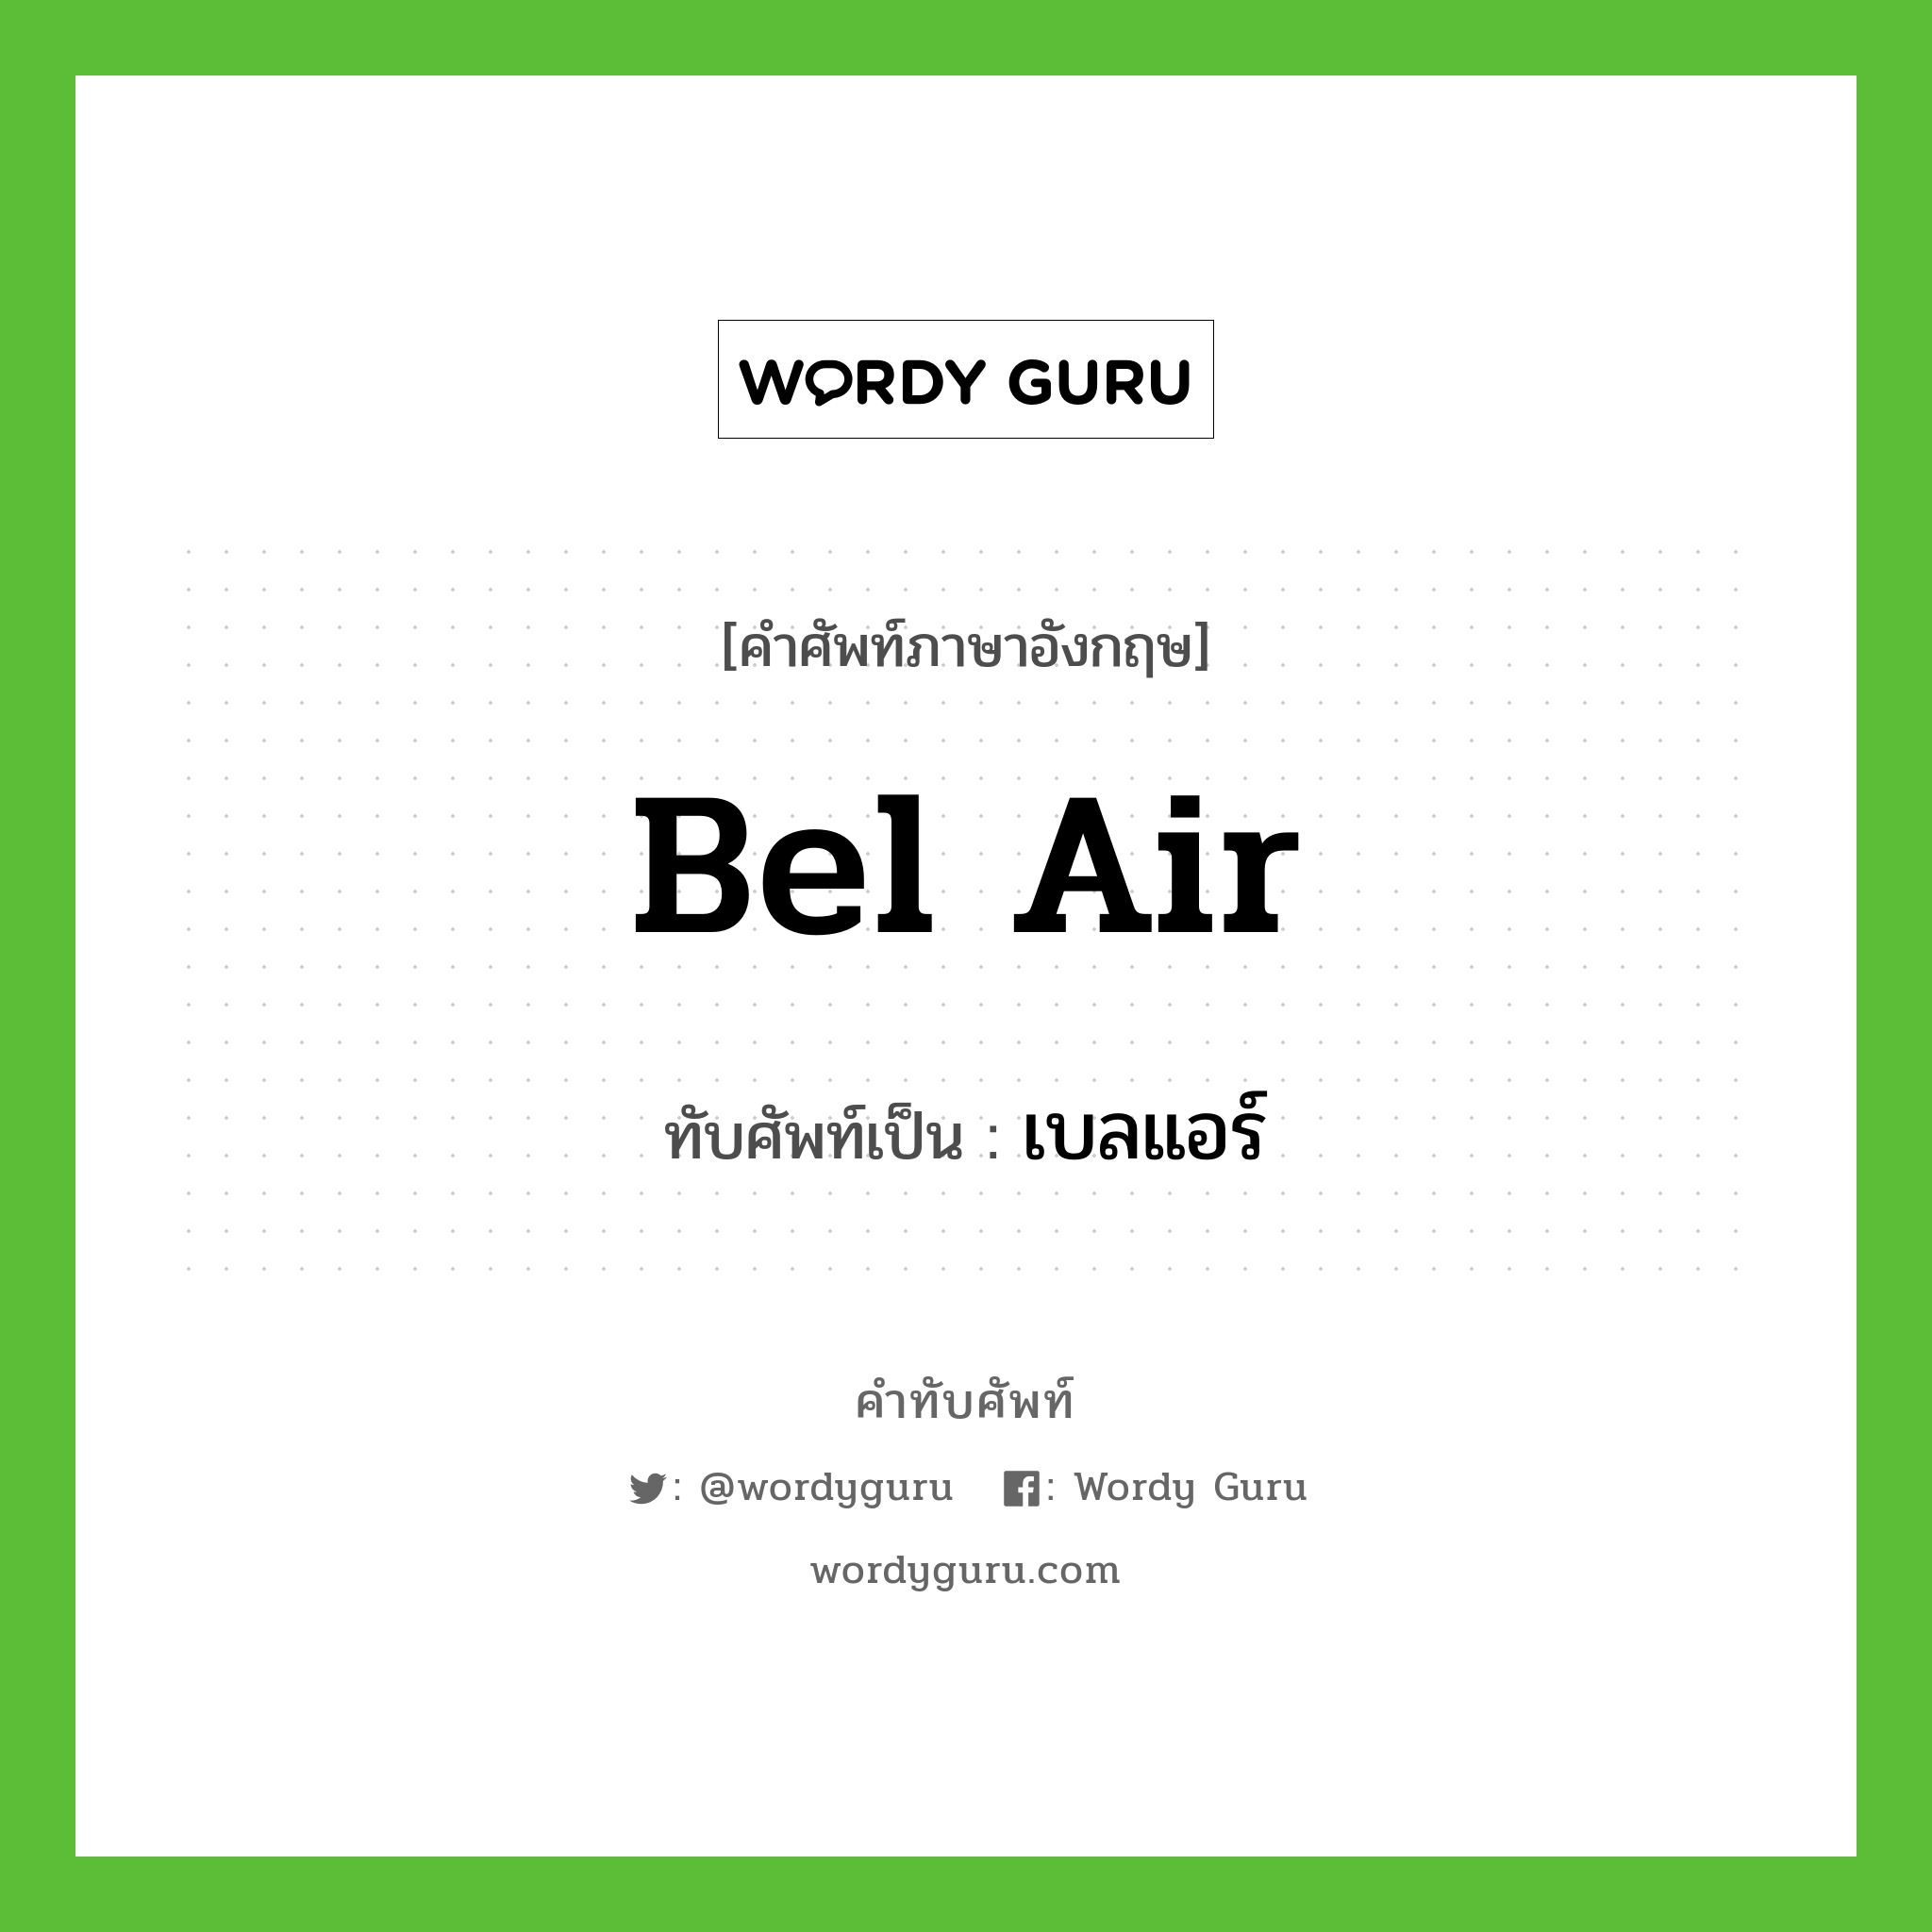 Bel Air เขียนเป็นคำไทยว่าอะไร?, คำศัพท์ภาษาอังกฤษ Bel Air ทับศัพท์เป็น เบลแอร์